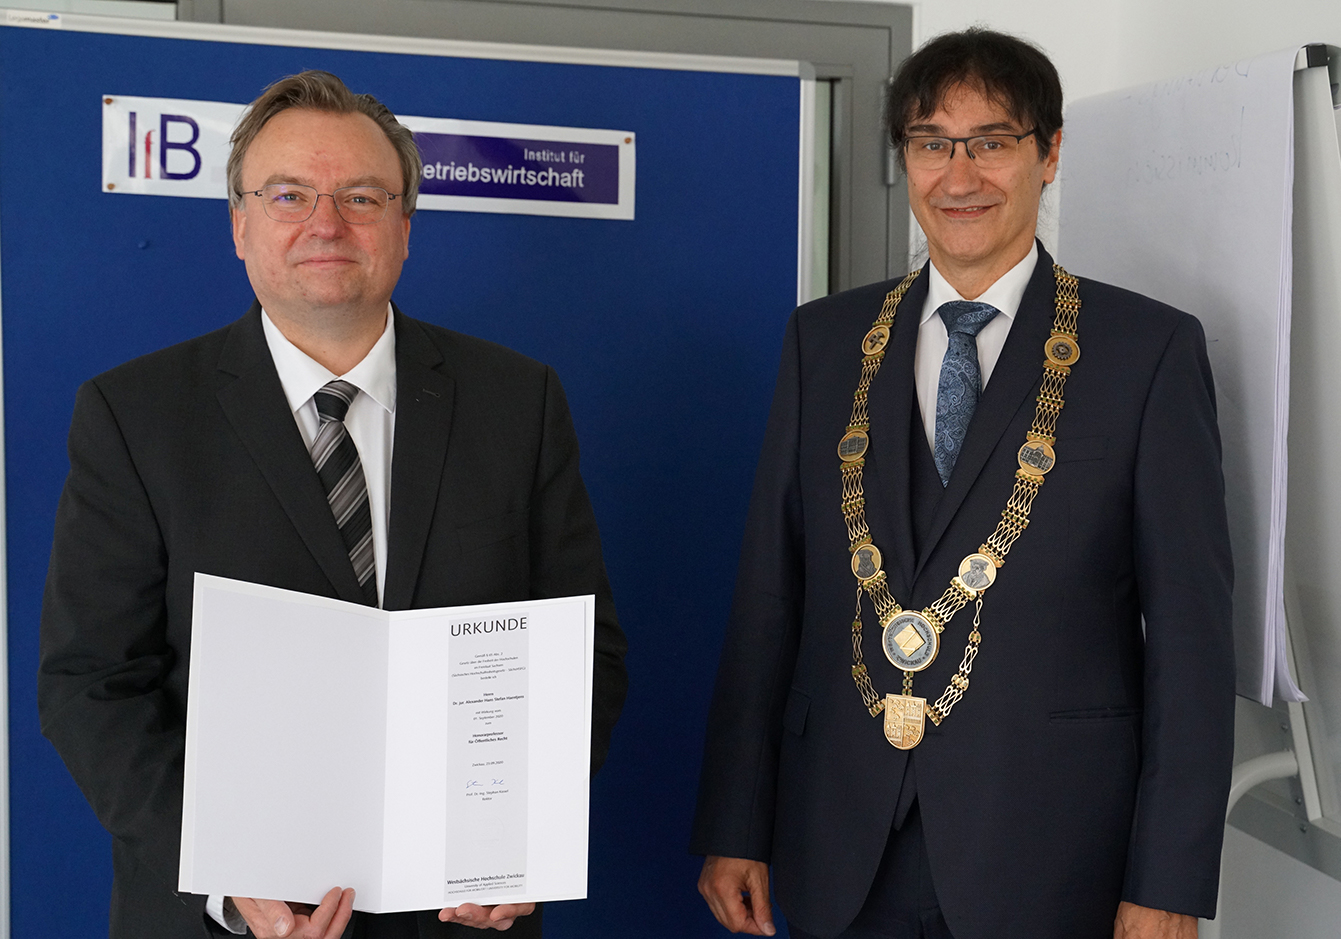 Foto: Prof. Haentjens links mit der Urkunde zur Bestellung als Honorarprofessor. Rechts neben ihm Rektor Prof. Stephan Kassel mit Amtskette. 